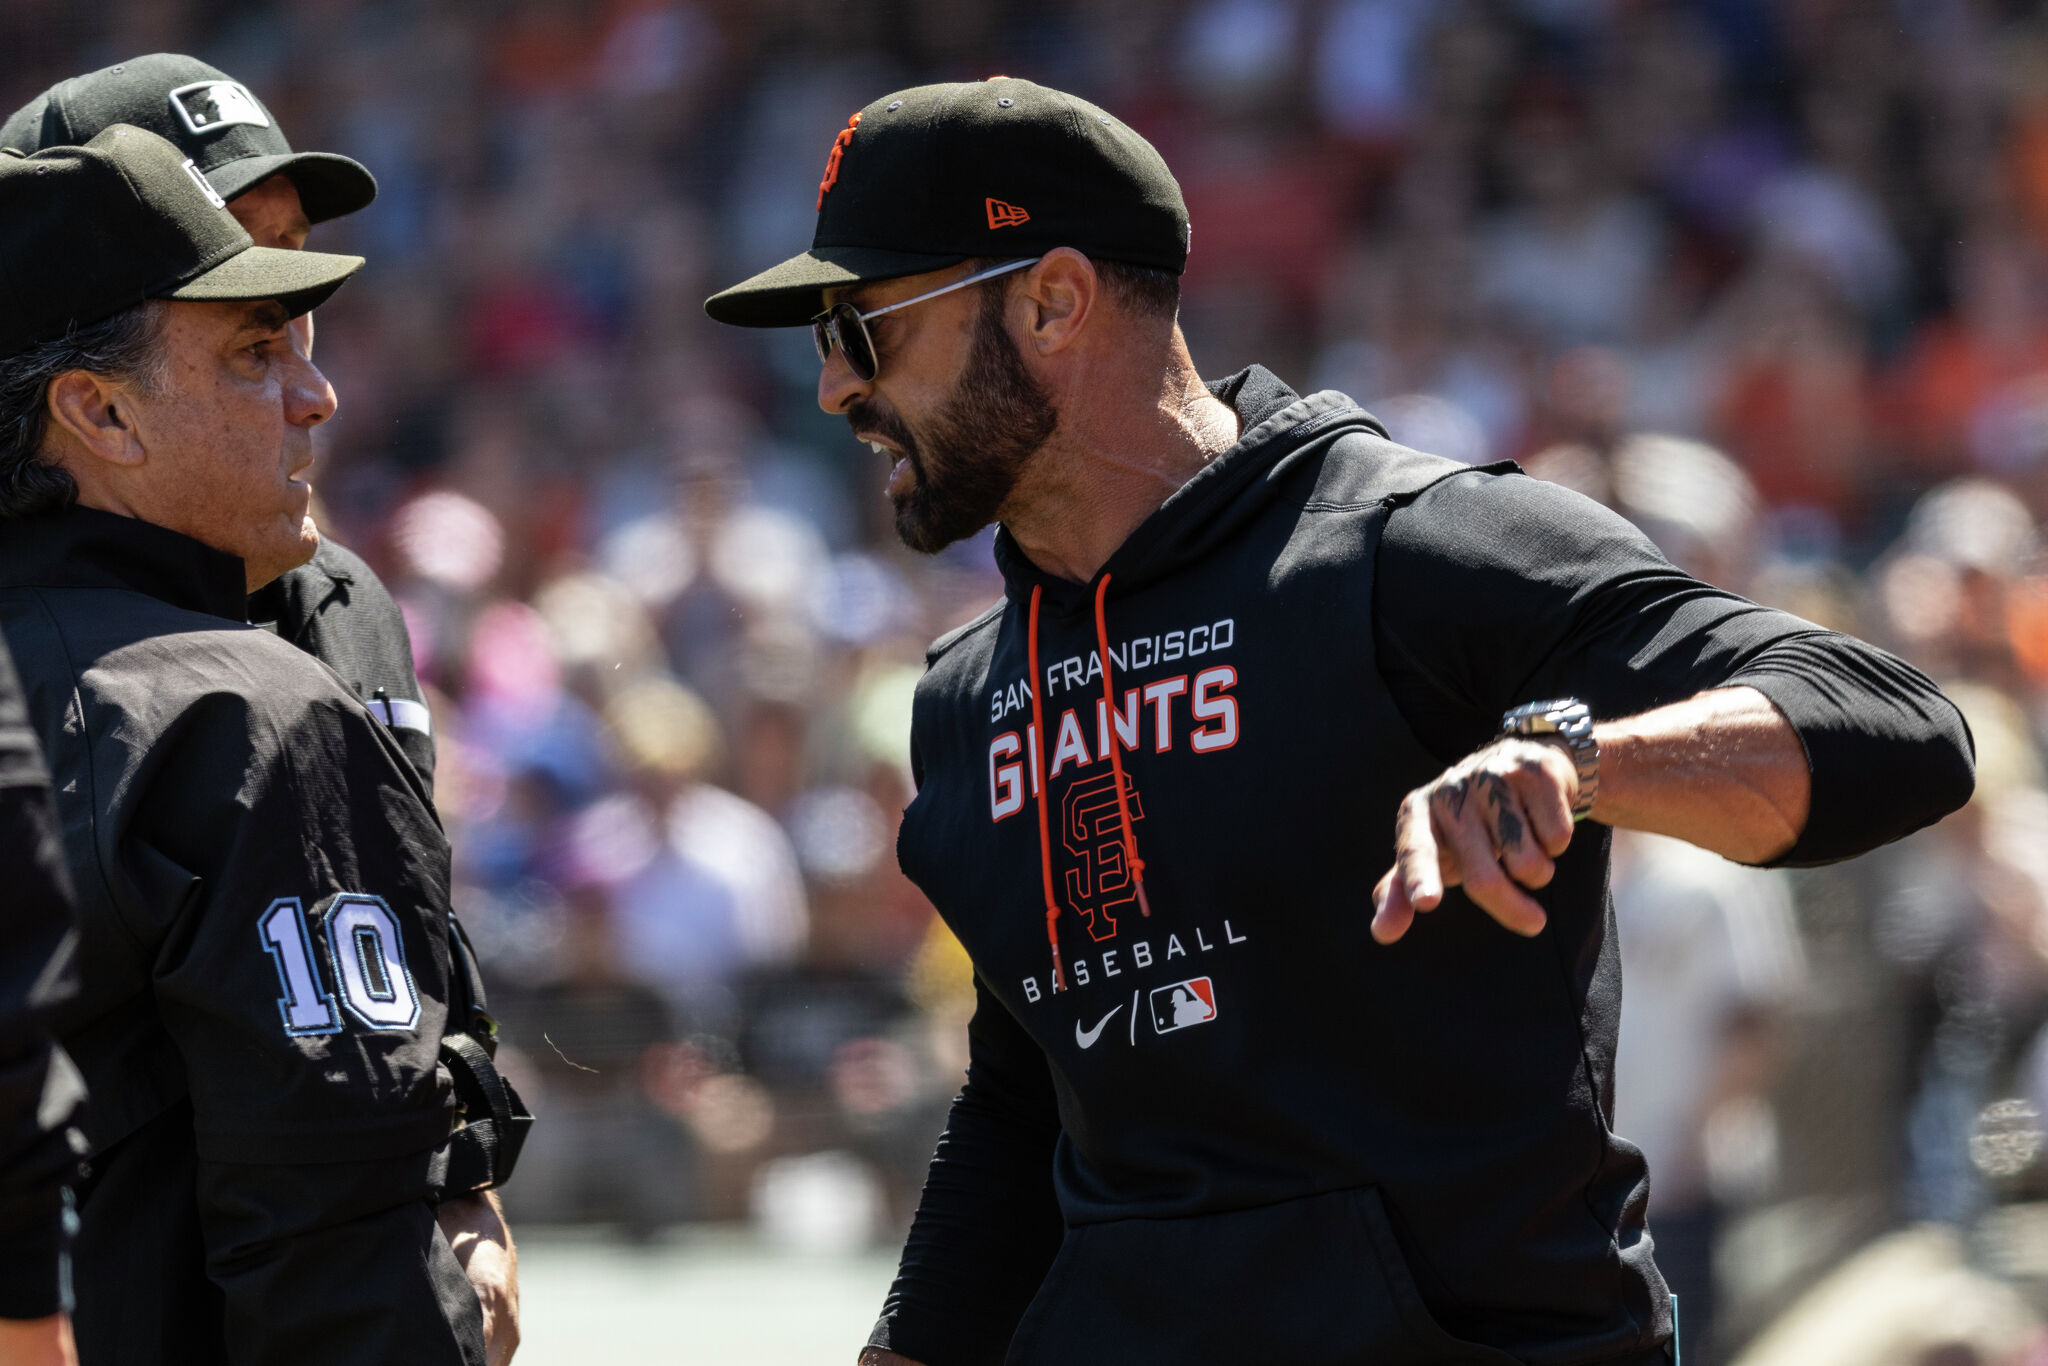 San Francisco Giants' Bench Coach Makes US Major League Baseball History